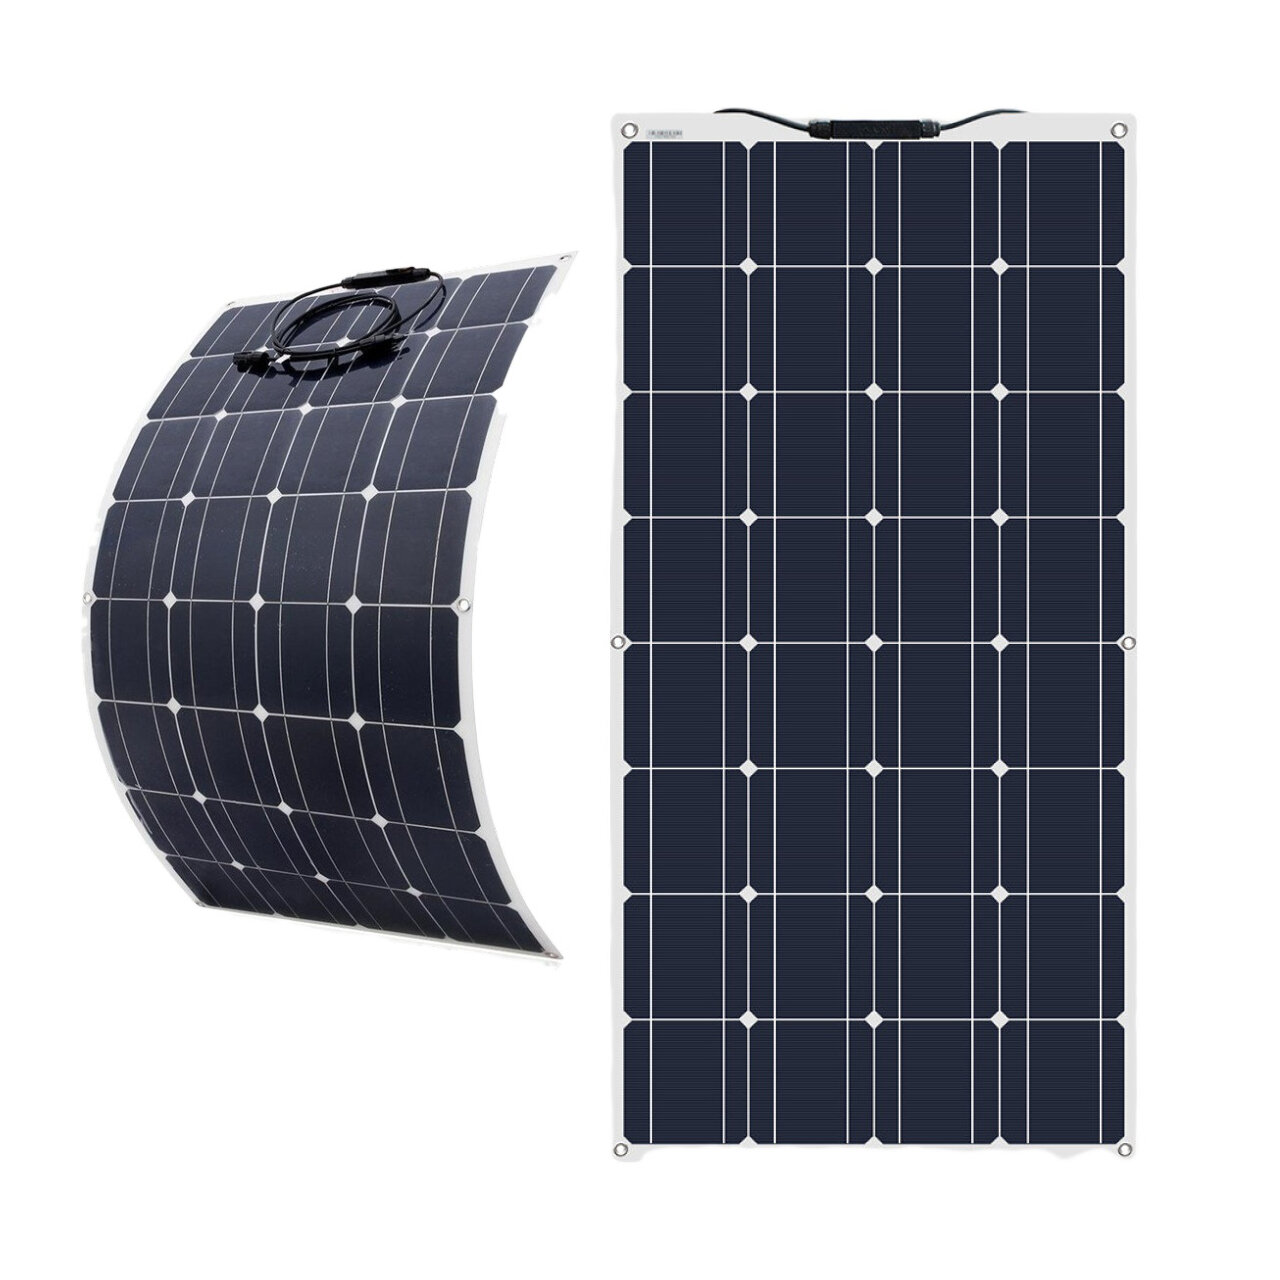 100Wソーラーパネルフレキシブルポータブルバッテリー充電器単結晶太陽電池アウトドアキャンプ旅行